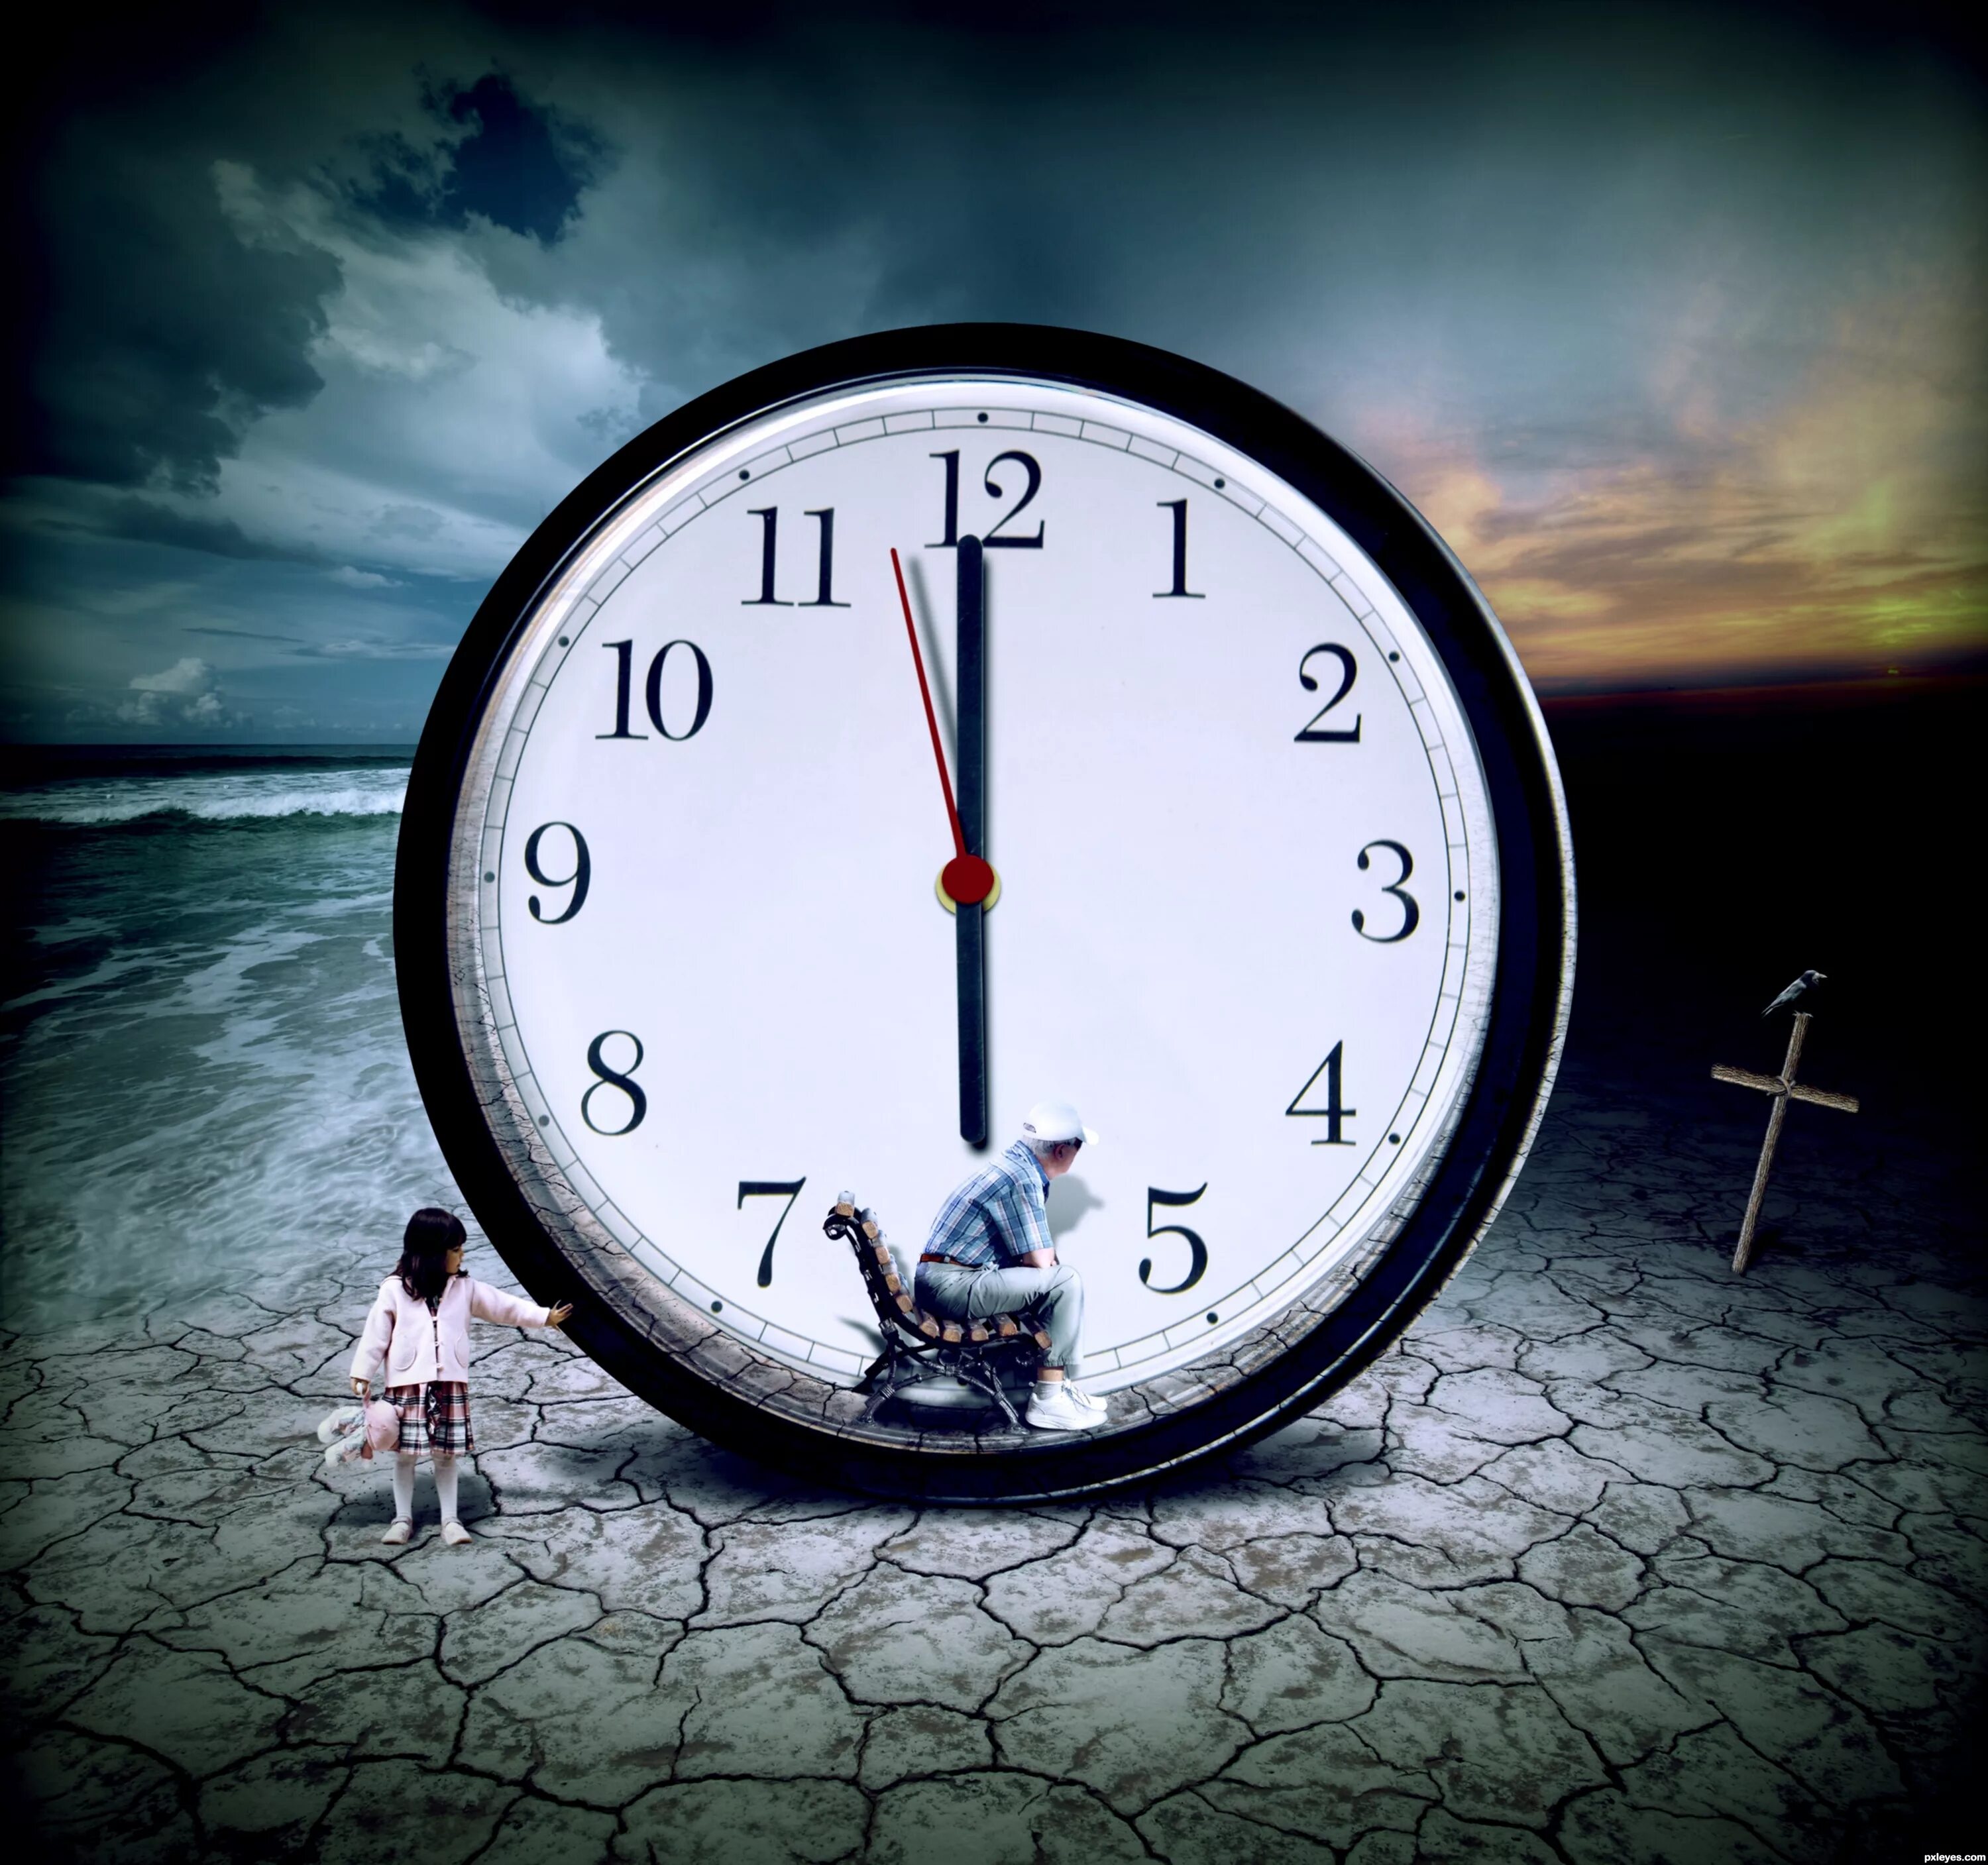 Creative time. Часы бегут. А время уходит. Изображение времени. Медленные часы.